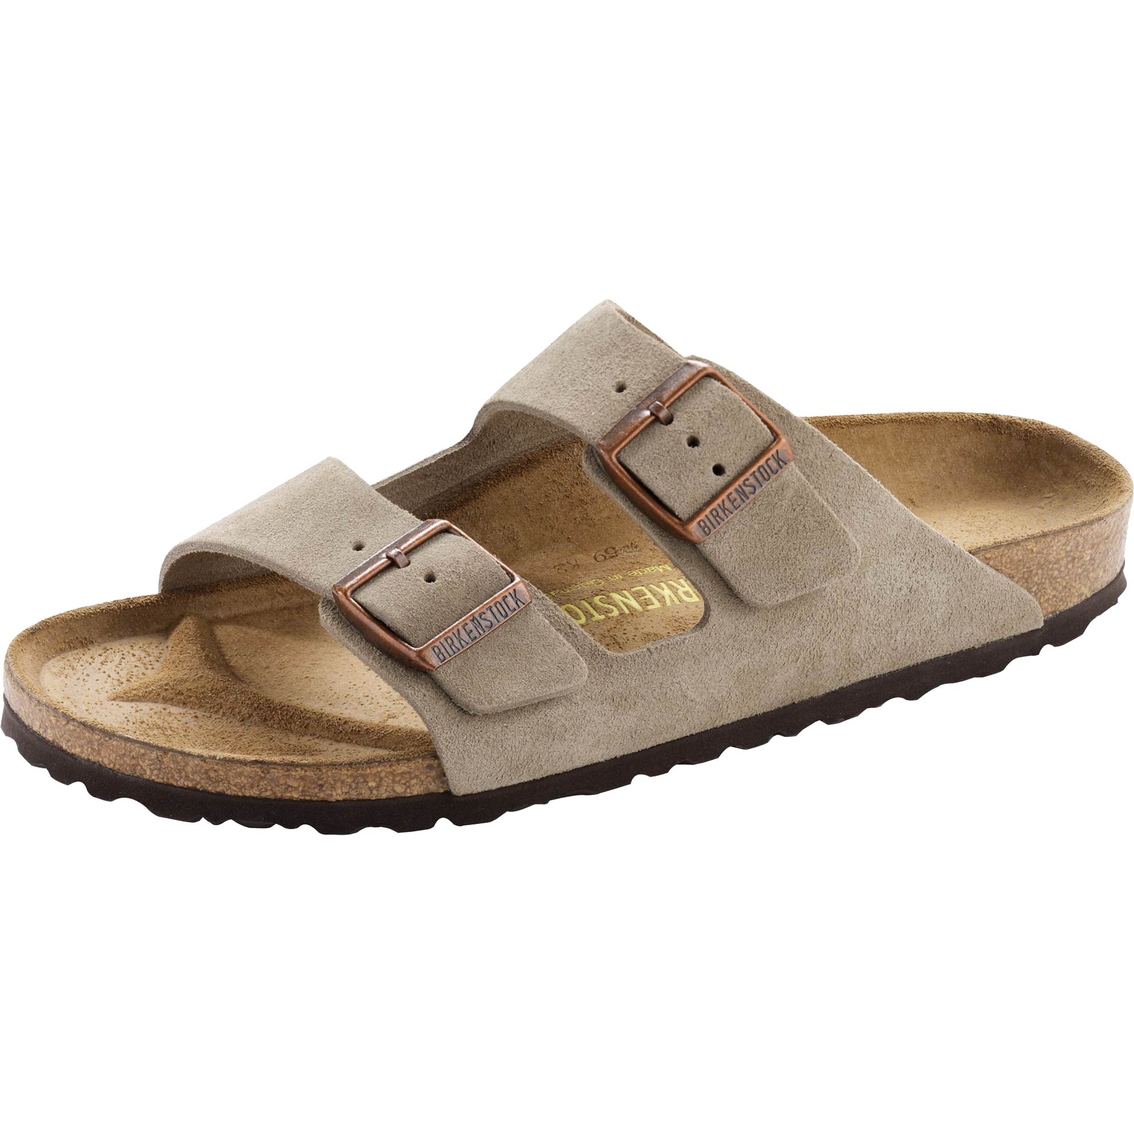 Birkenstock Men's Arizona Suede Sandals | Sandals & Flip Flops | Shoes ...